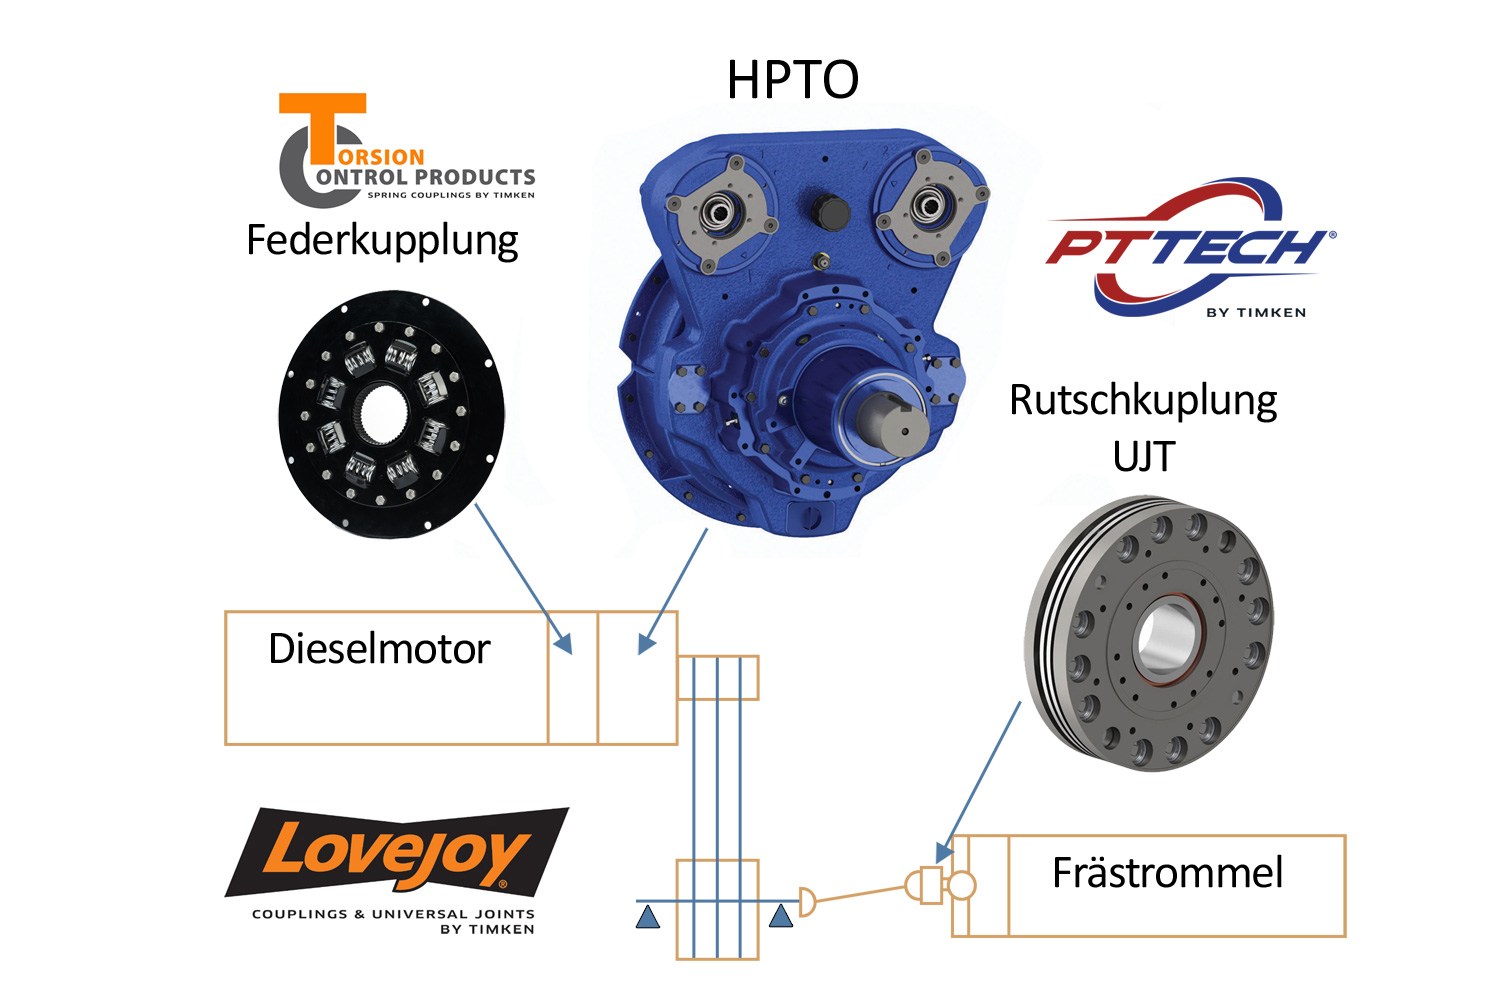 Beispiel eines fiktiven Antriebsstrangs mit Federkupplung von Torsion Control Products, hydraulischem Abtrieb (HPTO) von PT Tech und Rutschkupplung von PT Tech 